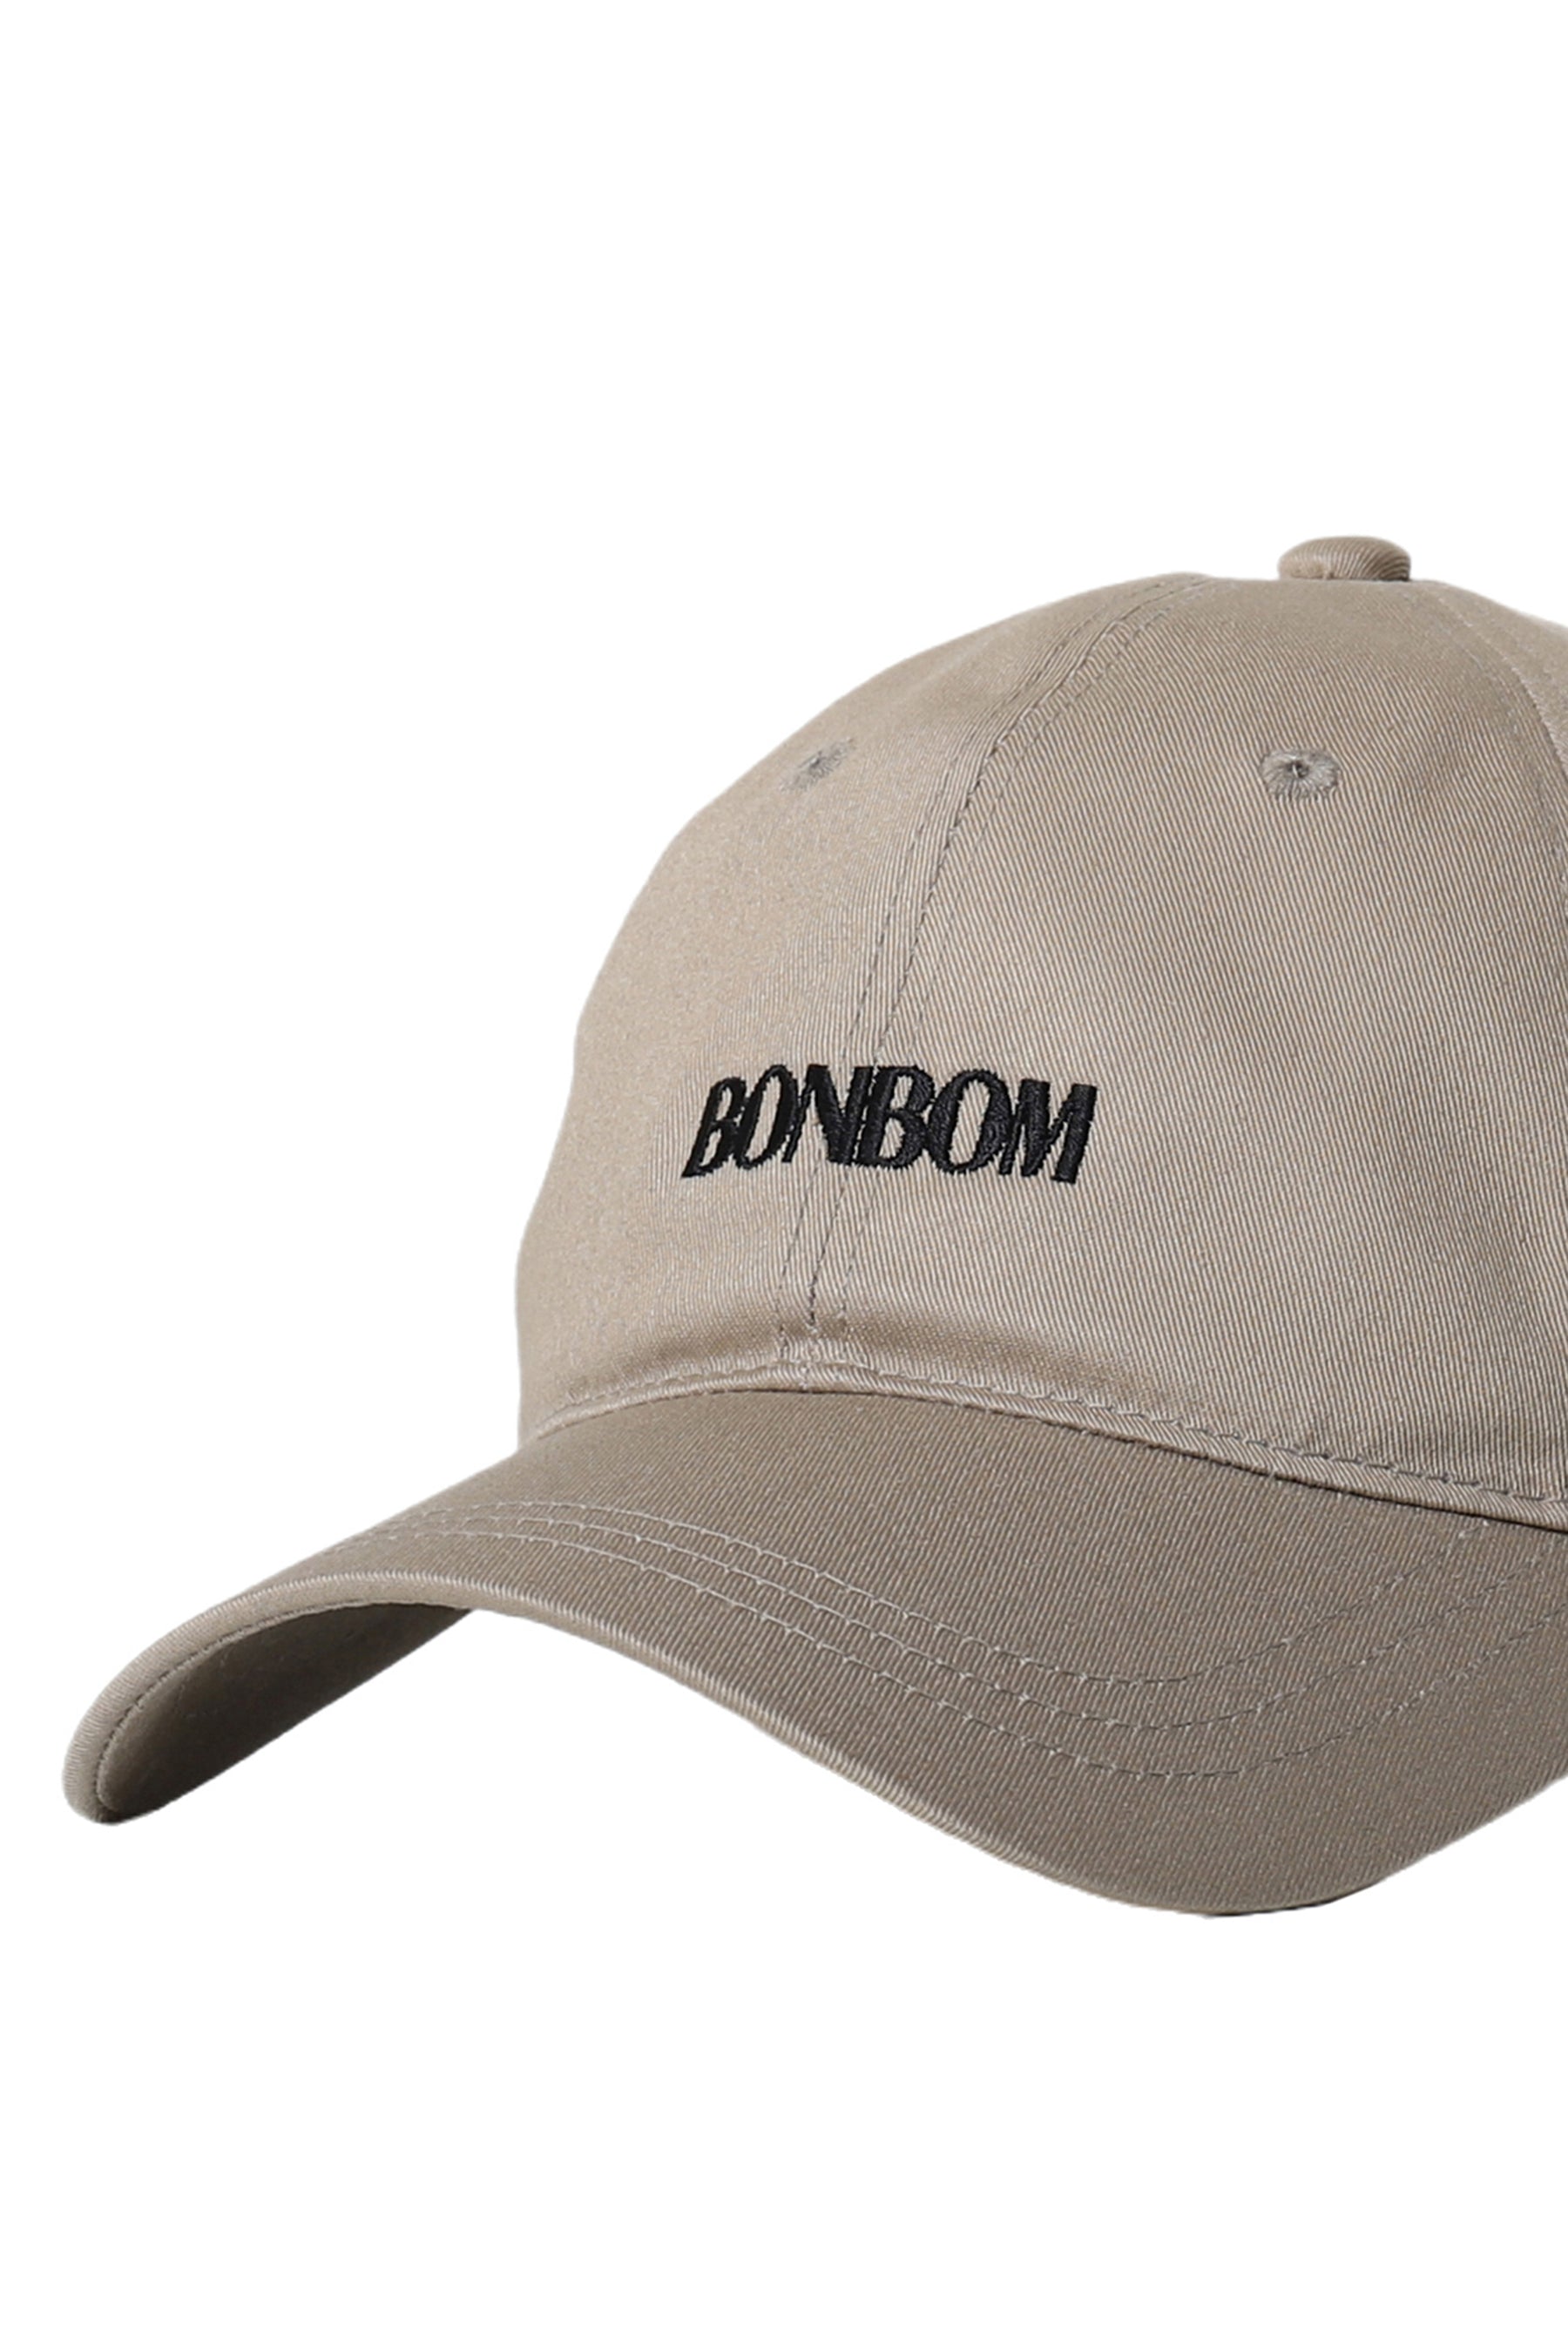 BONBOM LOGO CAP / BEI